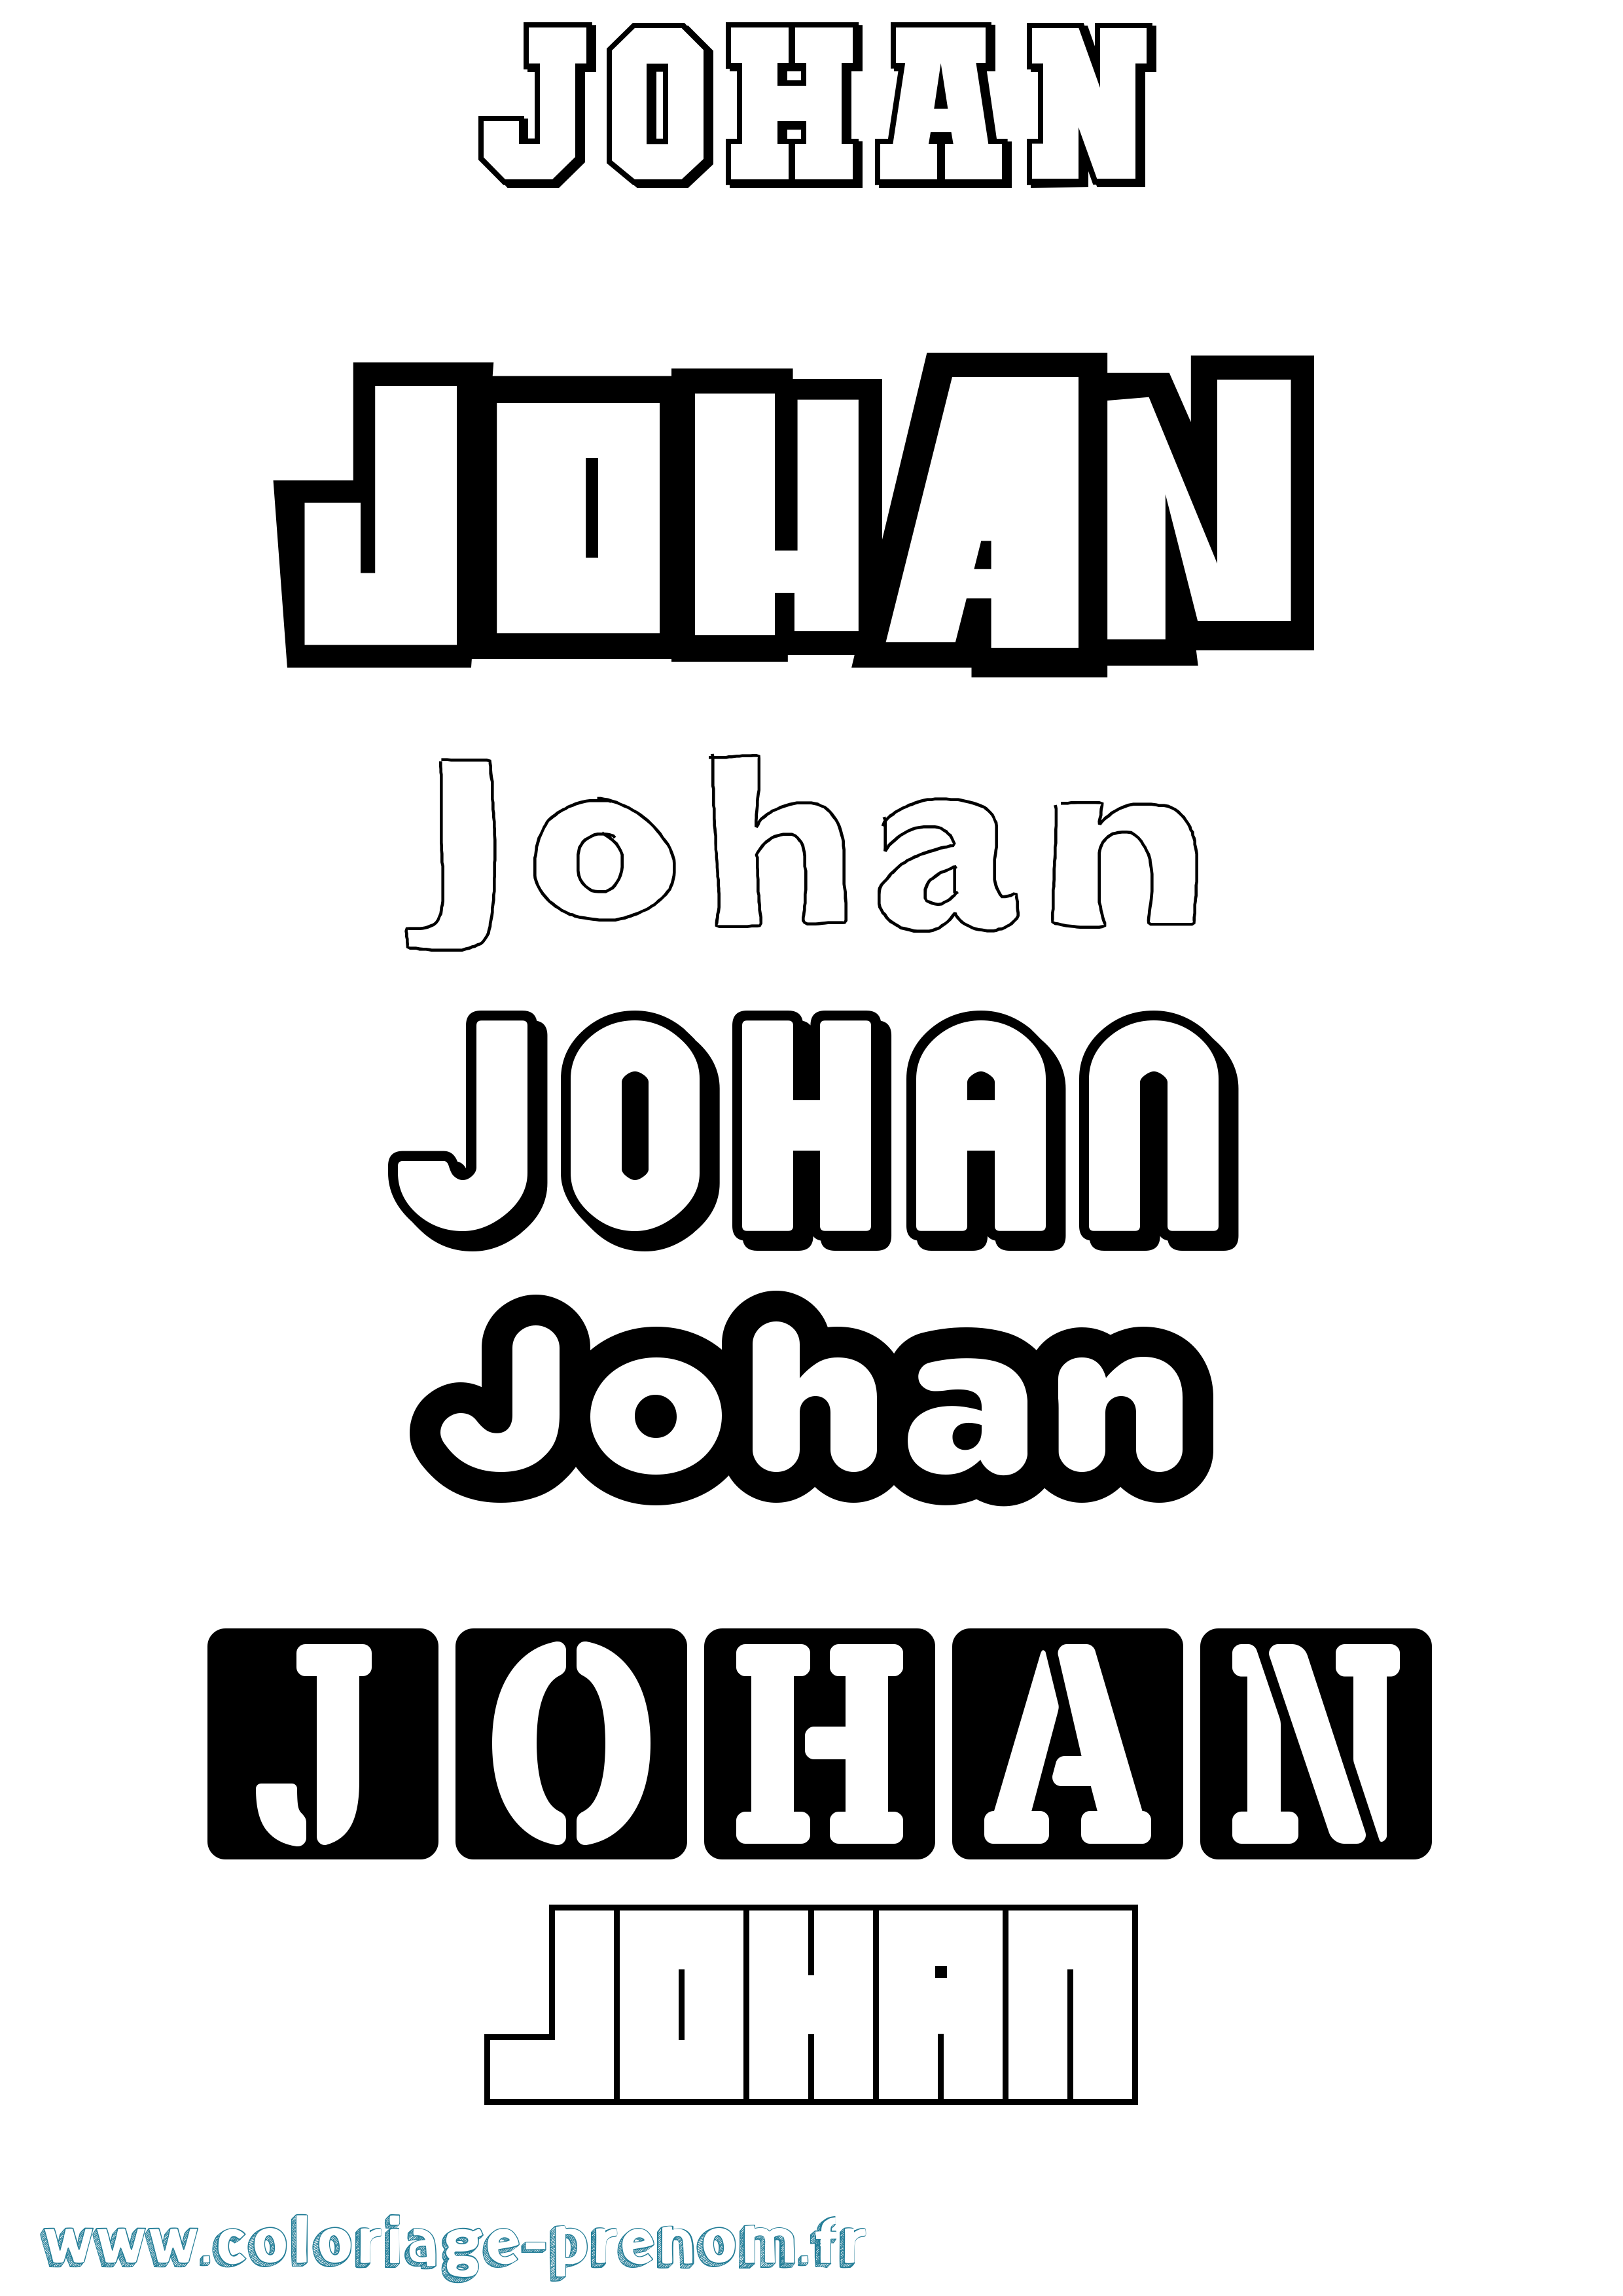 Coloriage prénom Johan